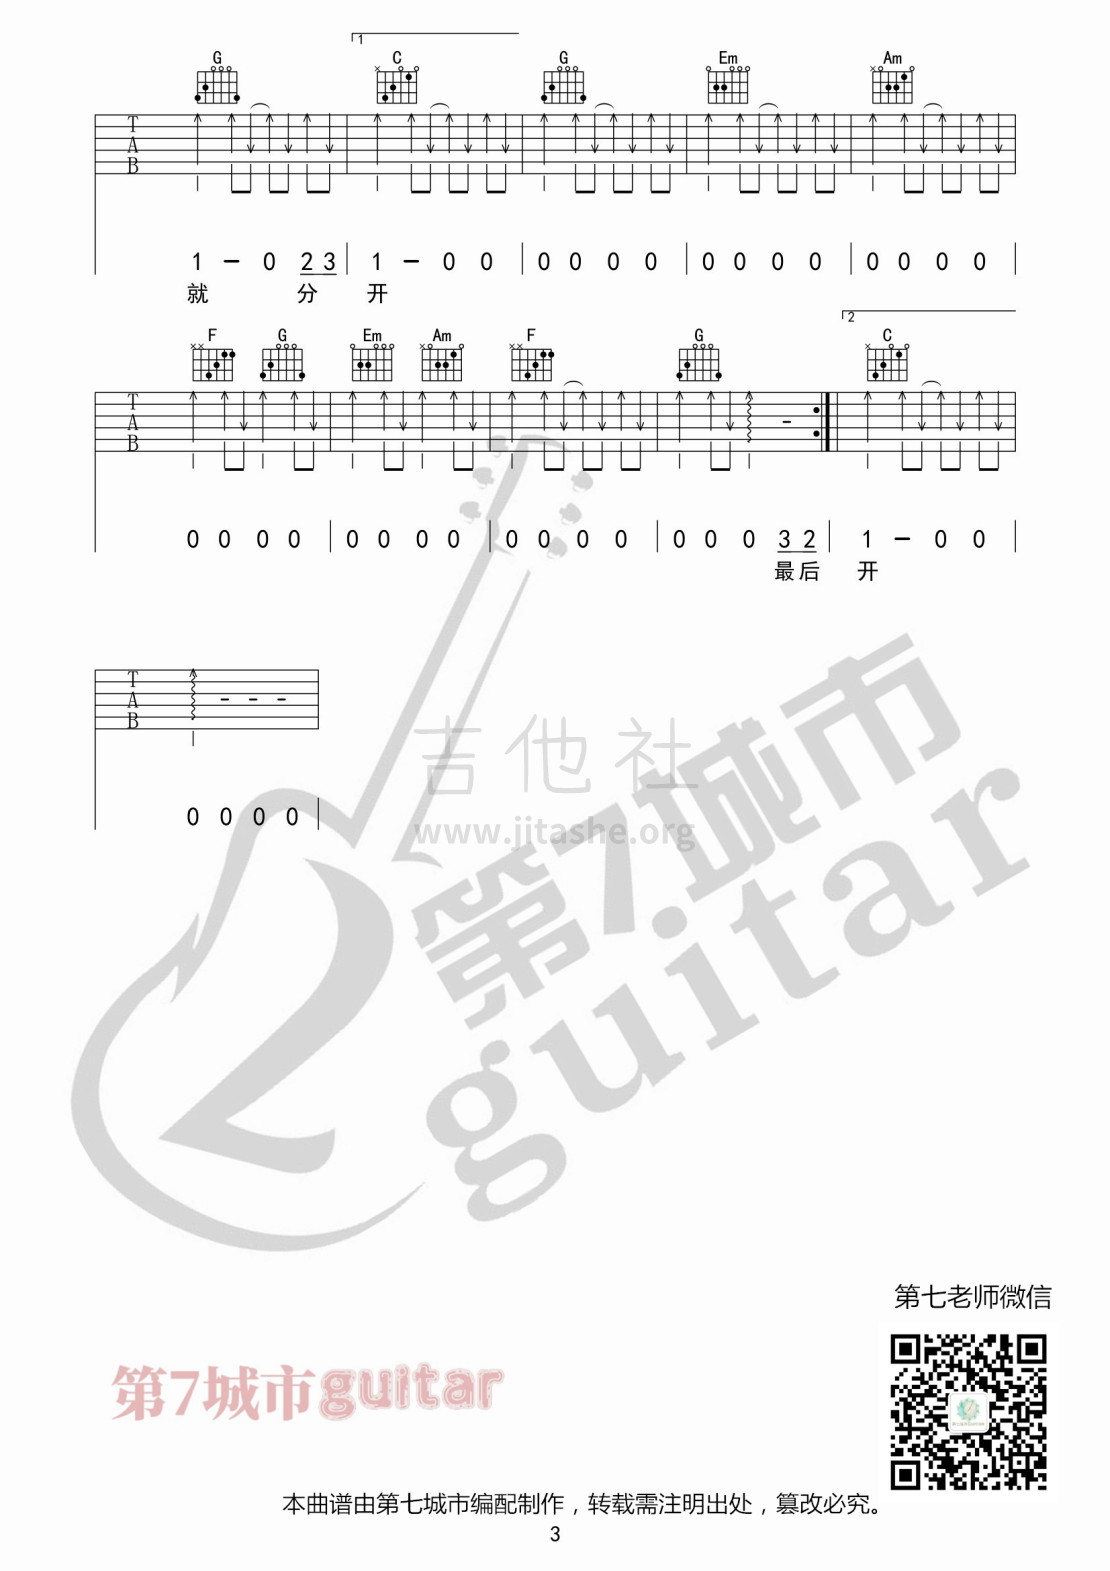 打印:最后的人吉他谱_杨小壮_最后的人水印03.jpg